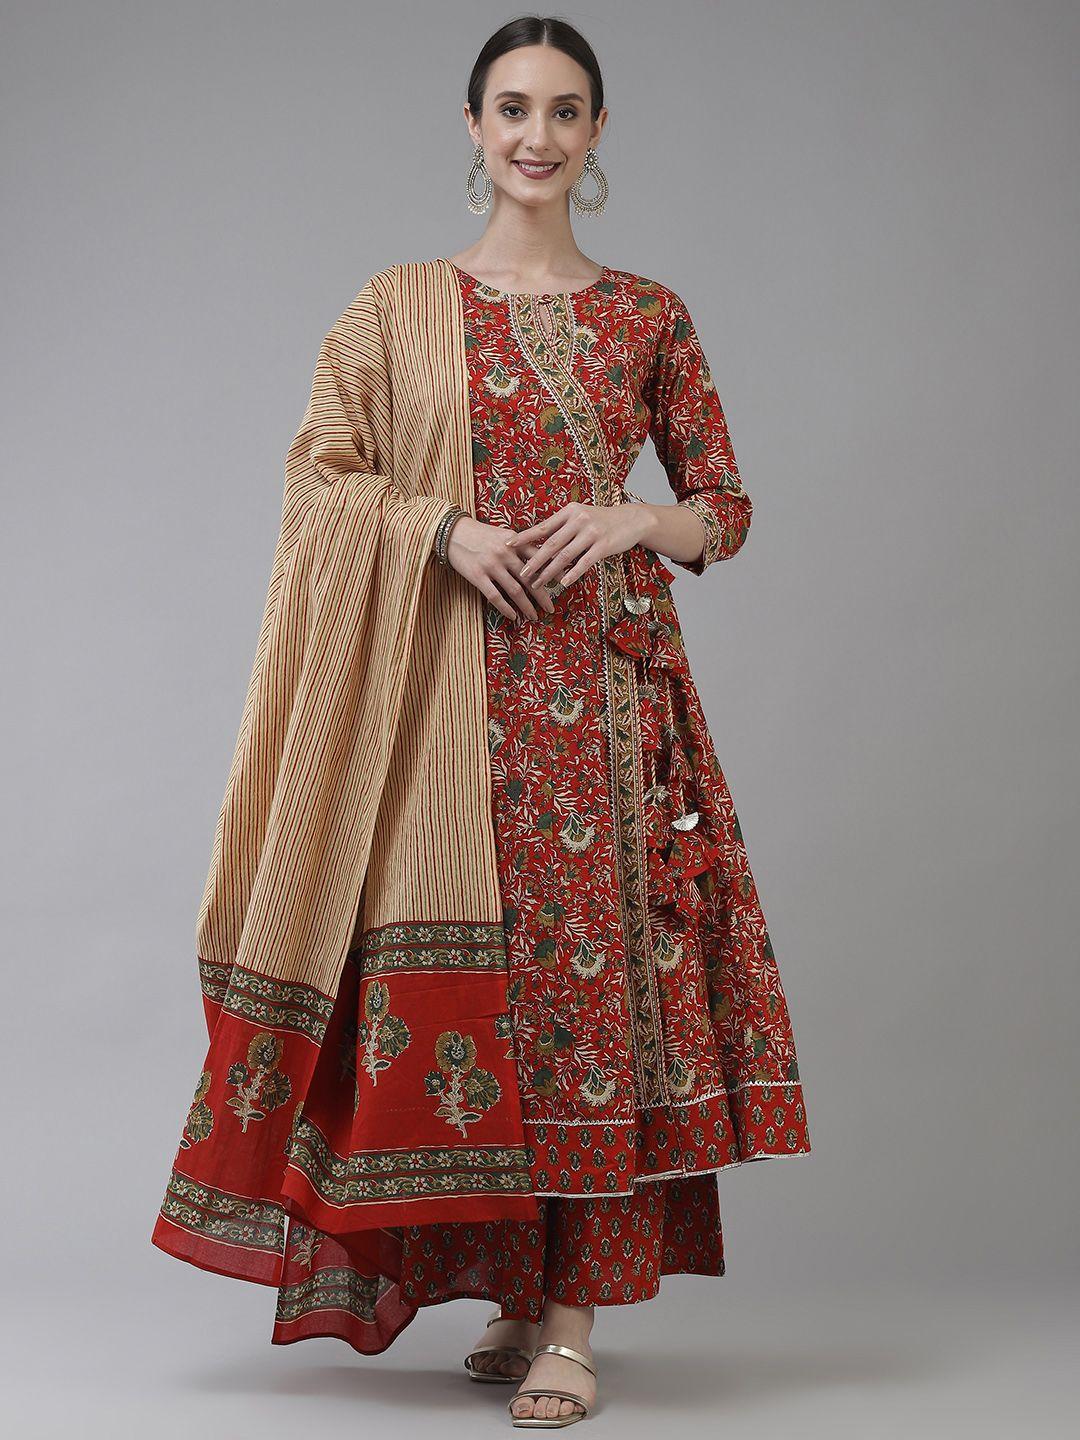 yufta women red ethnic motifs printed angrakha pure cotton kurta with palazzos & dupatta